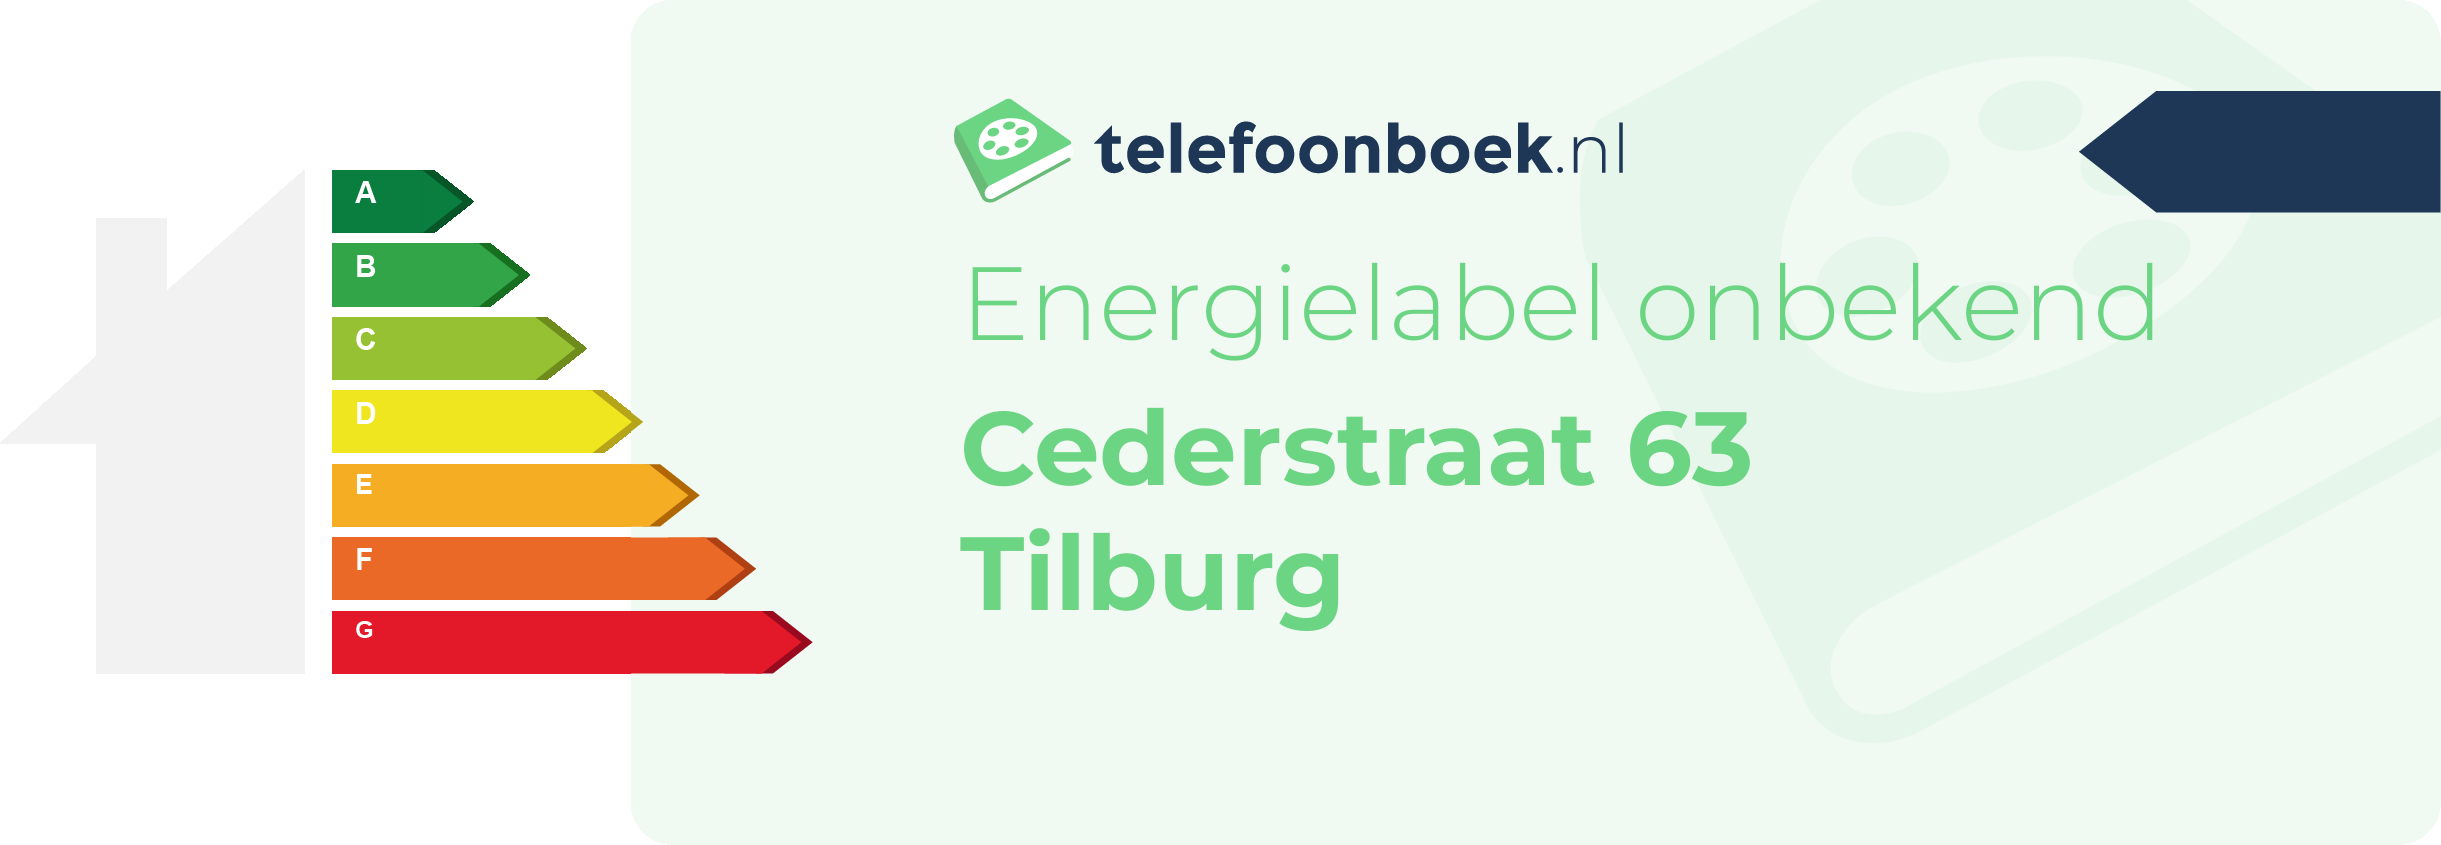 Energielabel Cederstraat 63 Tilburg